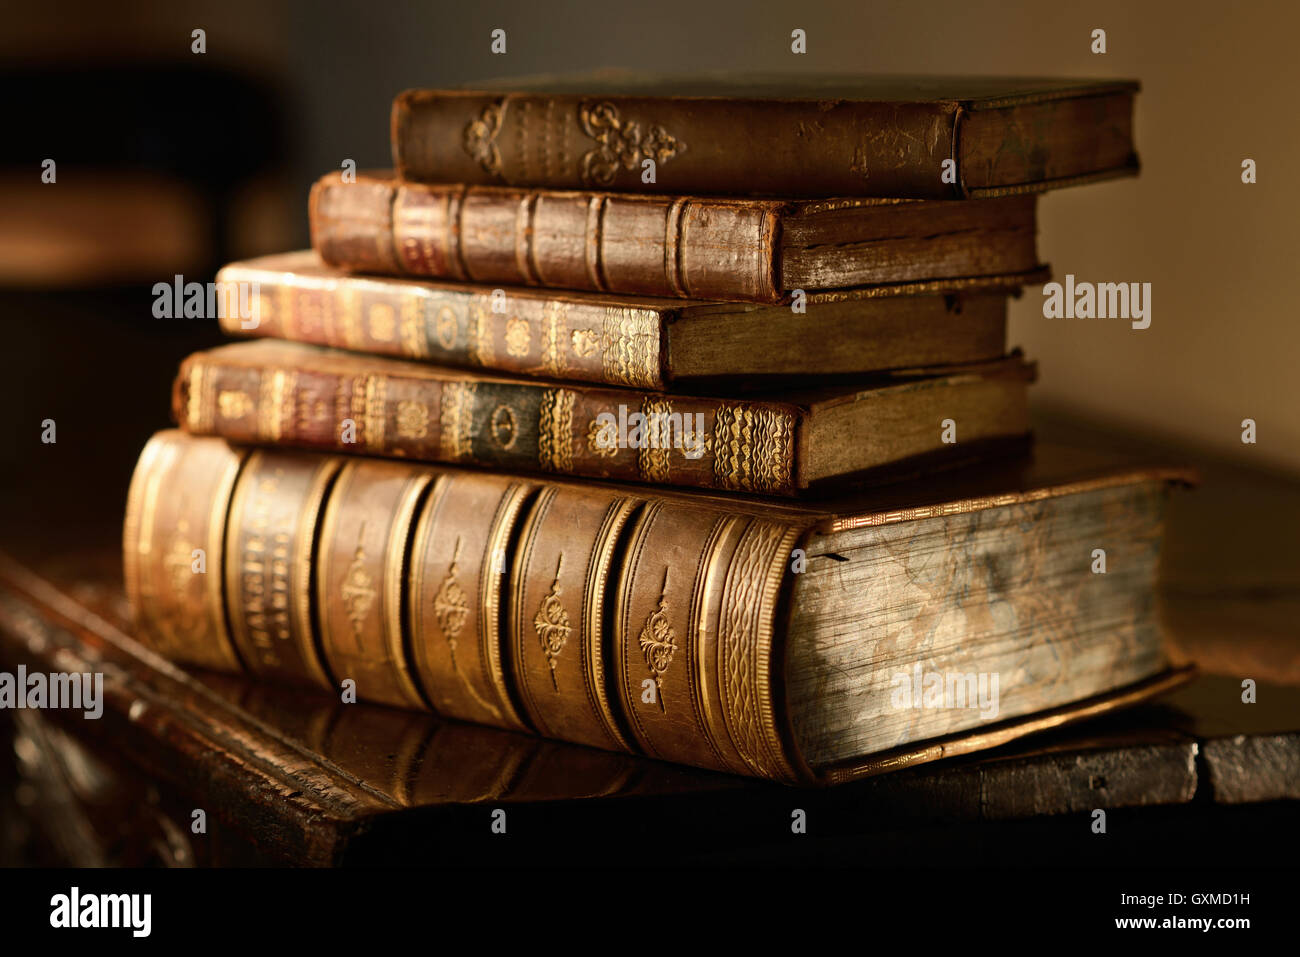 Pila de libros antiguos sobre superficie de madera antigua en la cálida luz direccional. El grunge y el enfoque selectivo. Foto de stock